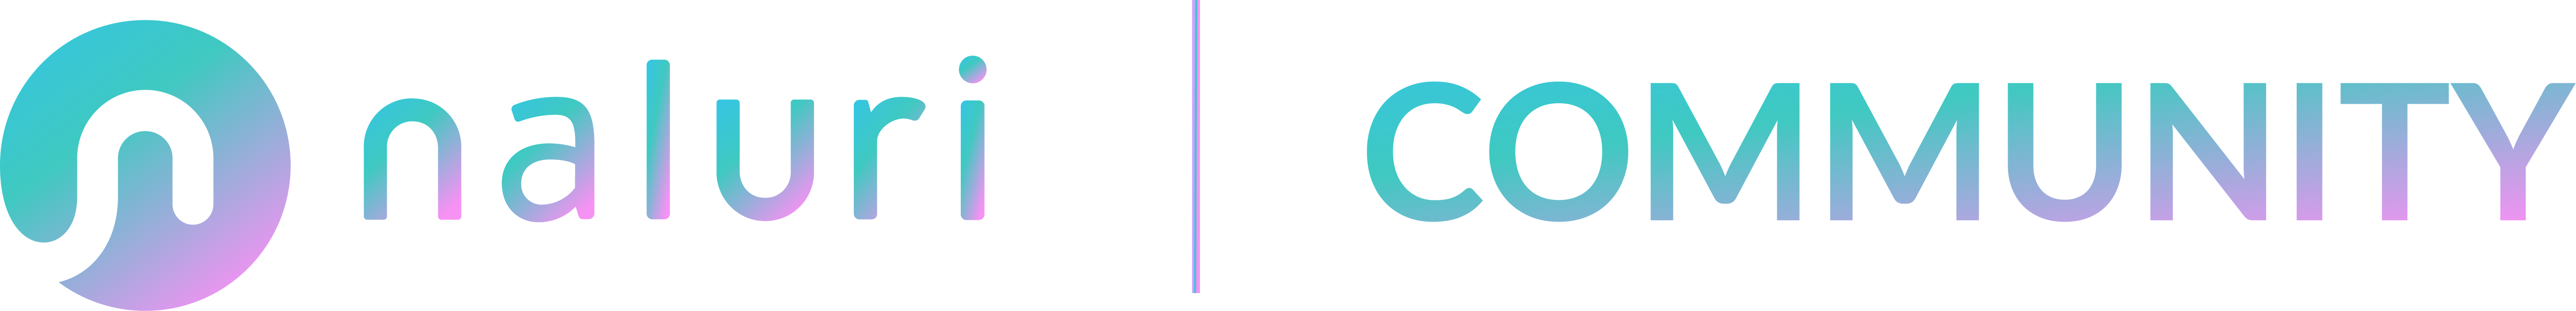 Community Logo-2